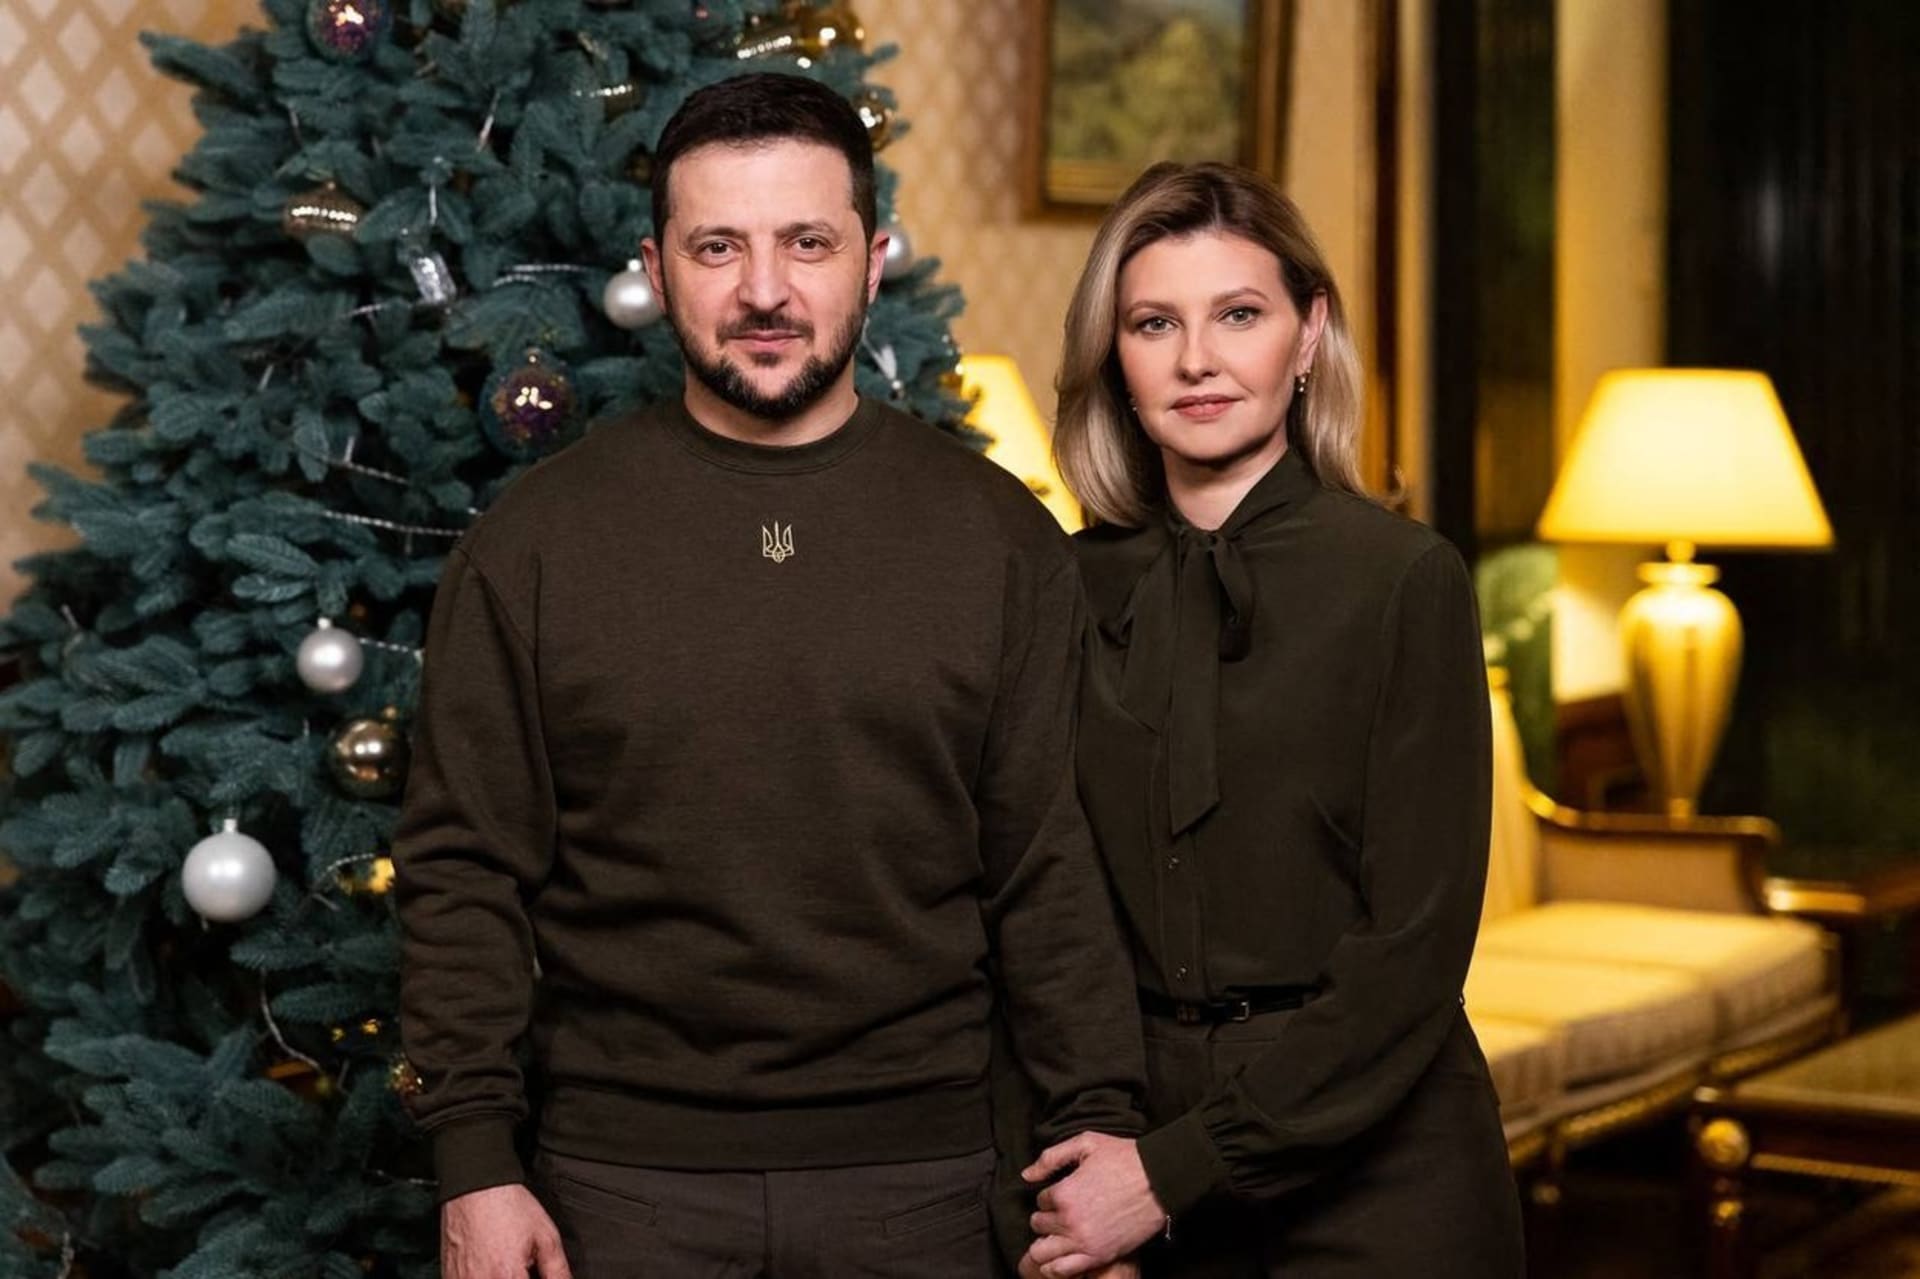 Loňské vánoční foto manželů Zelenských. Žádné široké úsměvy a tmavé oděvy v armádních barvách.